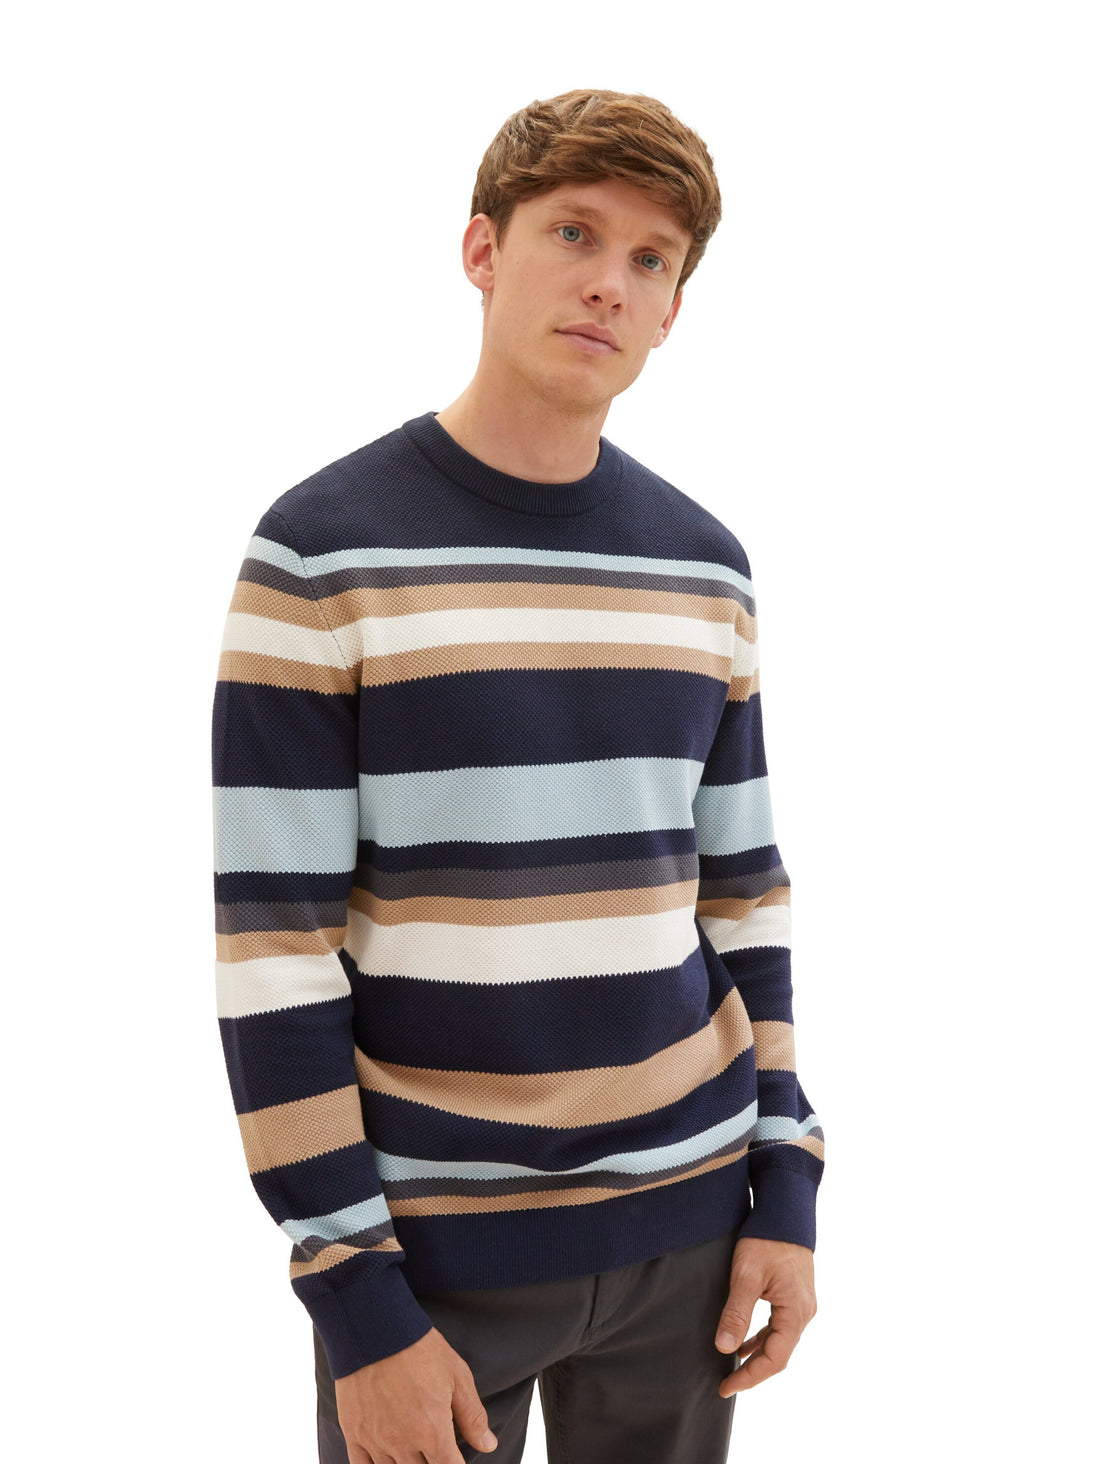 Striped Pullover With Round Neckline_1038200_32762_02